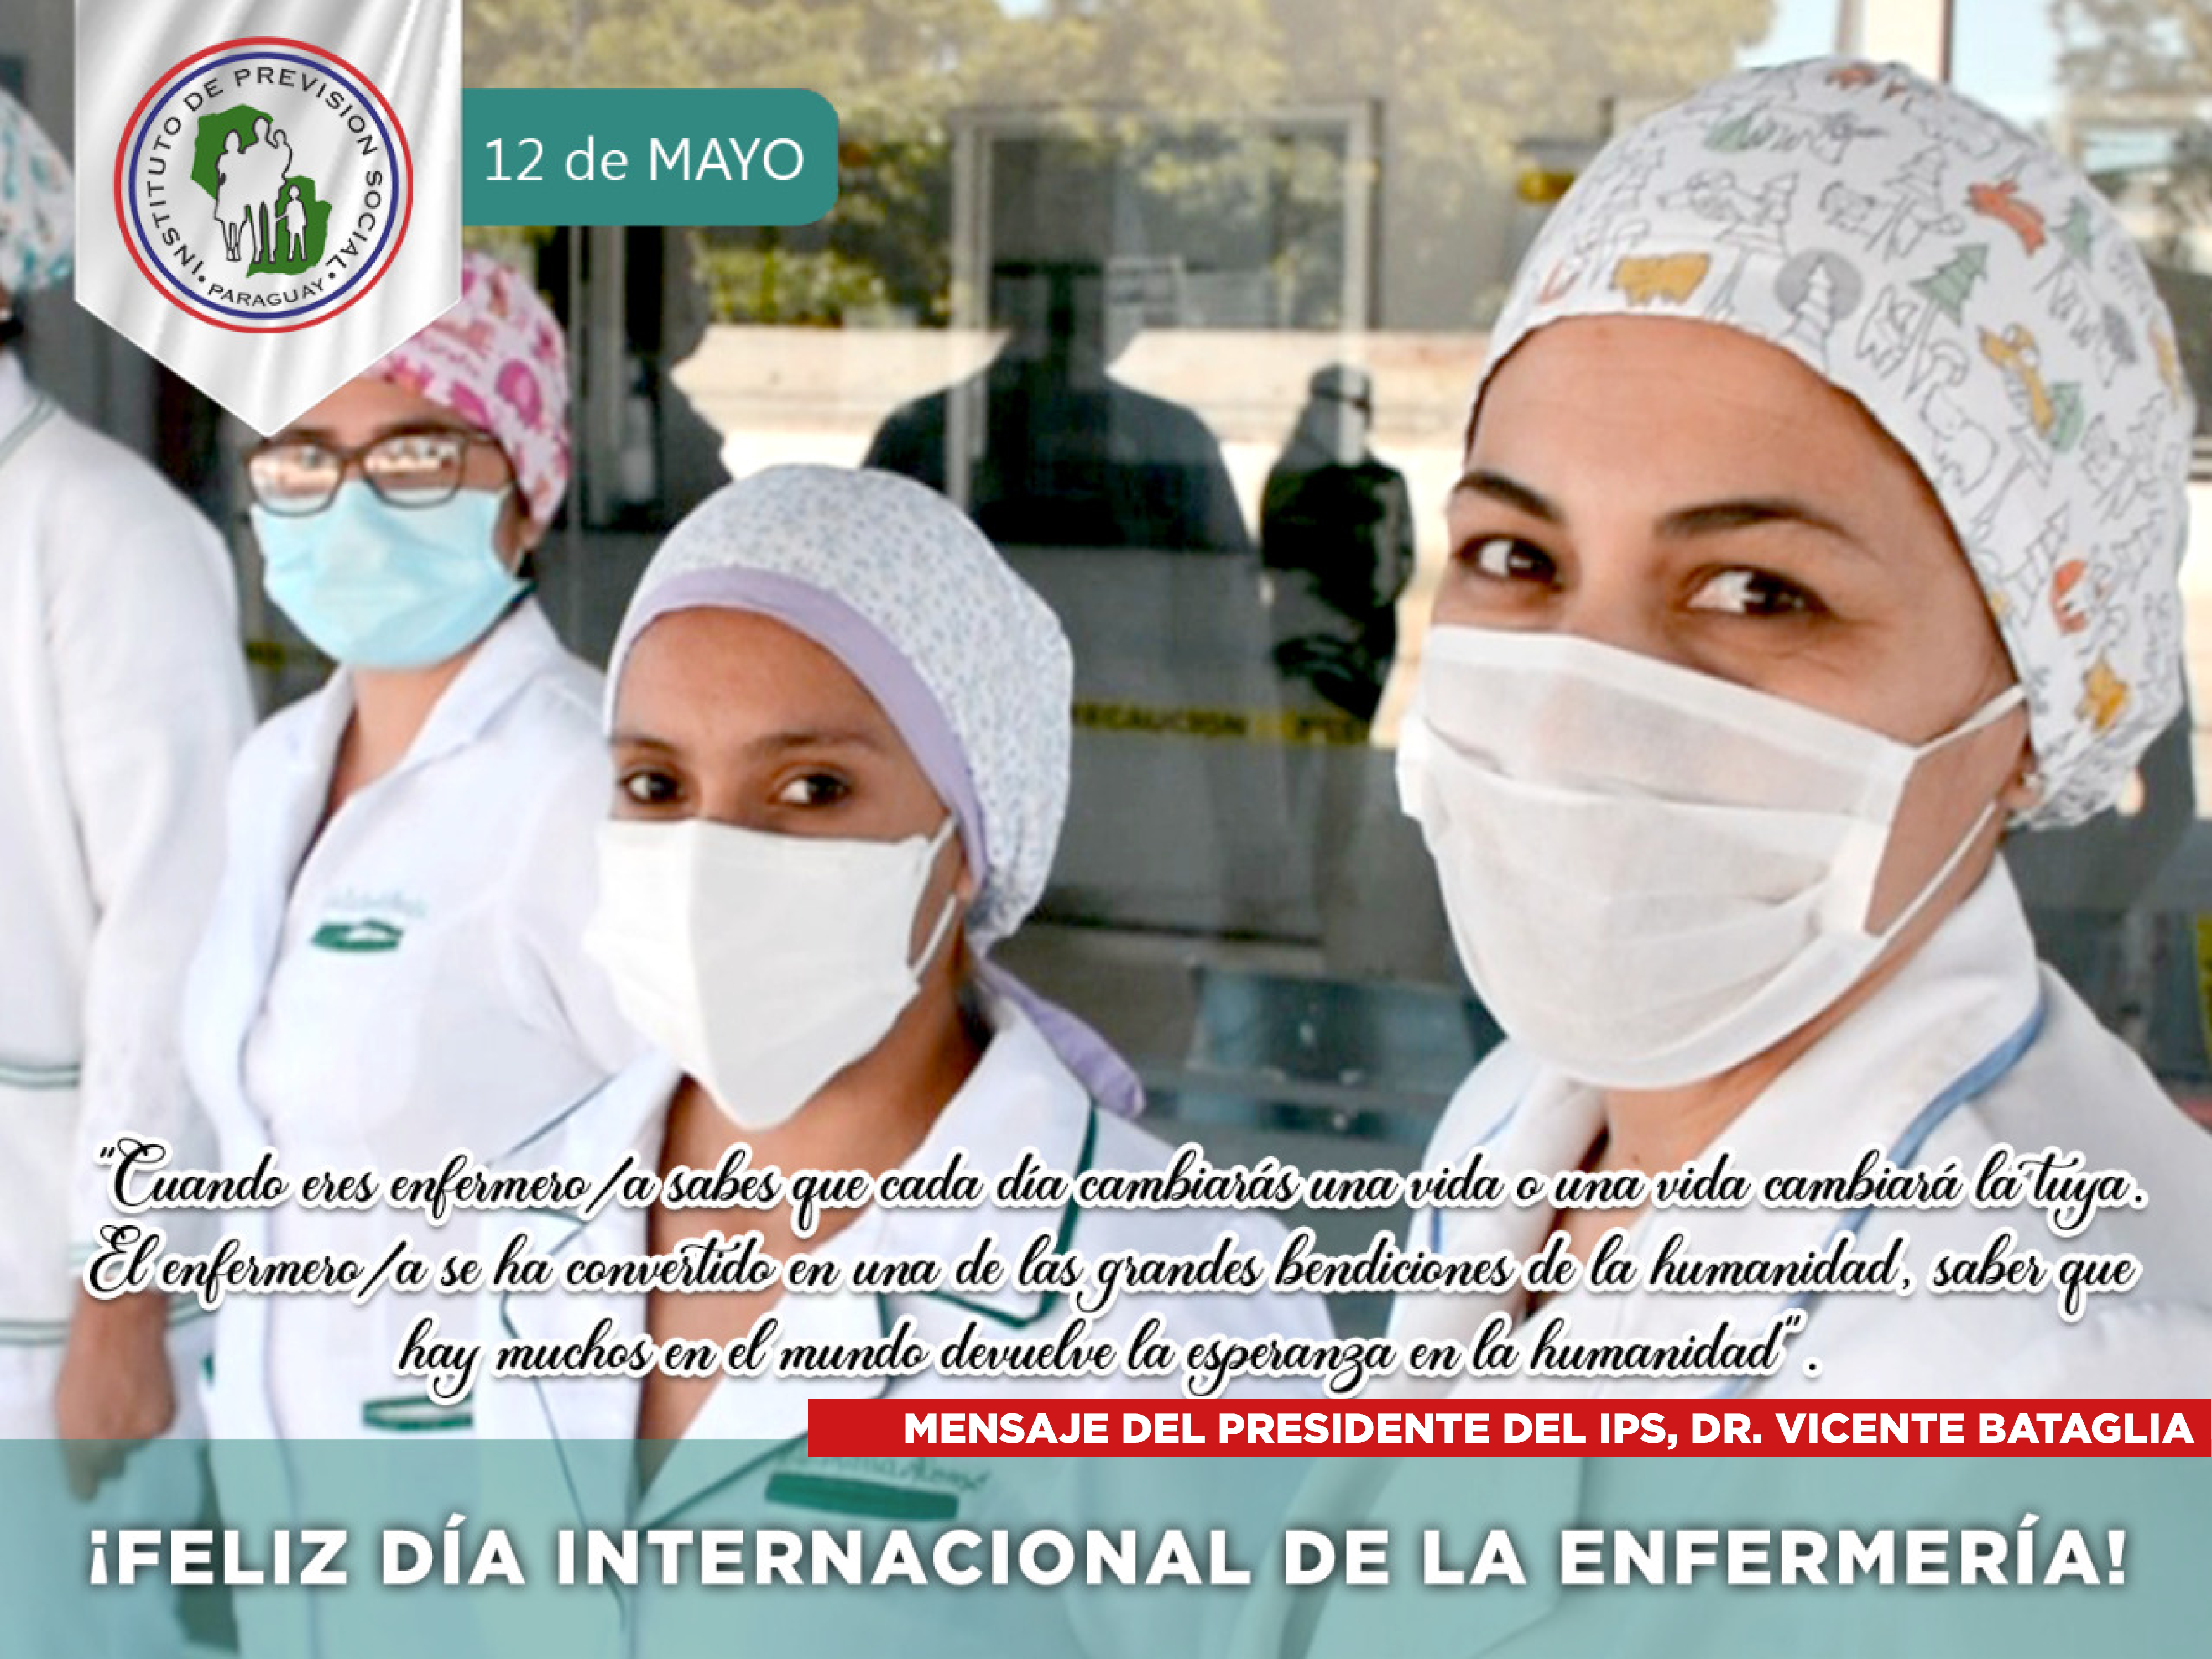 “Día Internacional de la Enfermería” homenaje a los valientes enfermeros/as del IPS en Pandemia